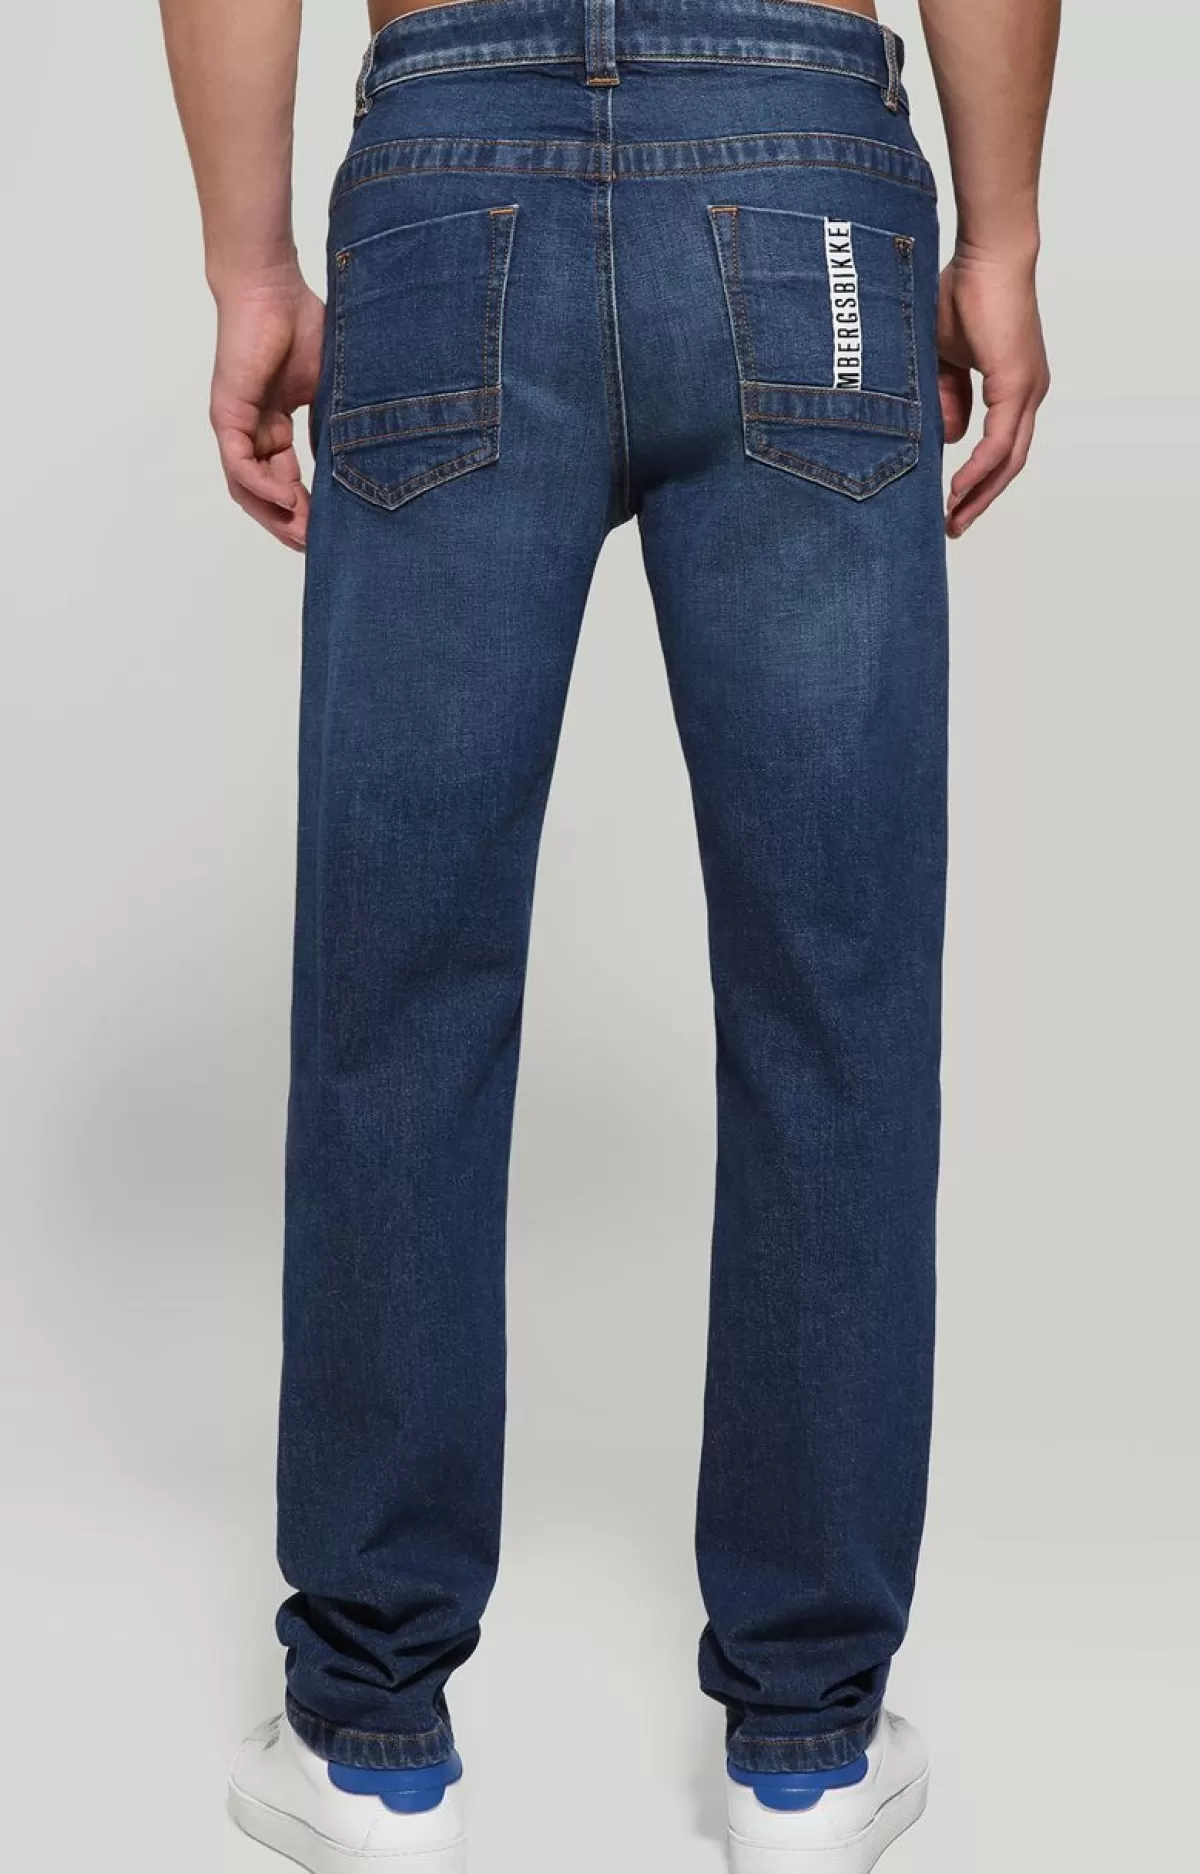 Bikkembergs Men'S Jeans Regular Fit With Tape Blue Denim Shop